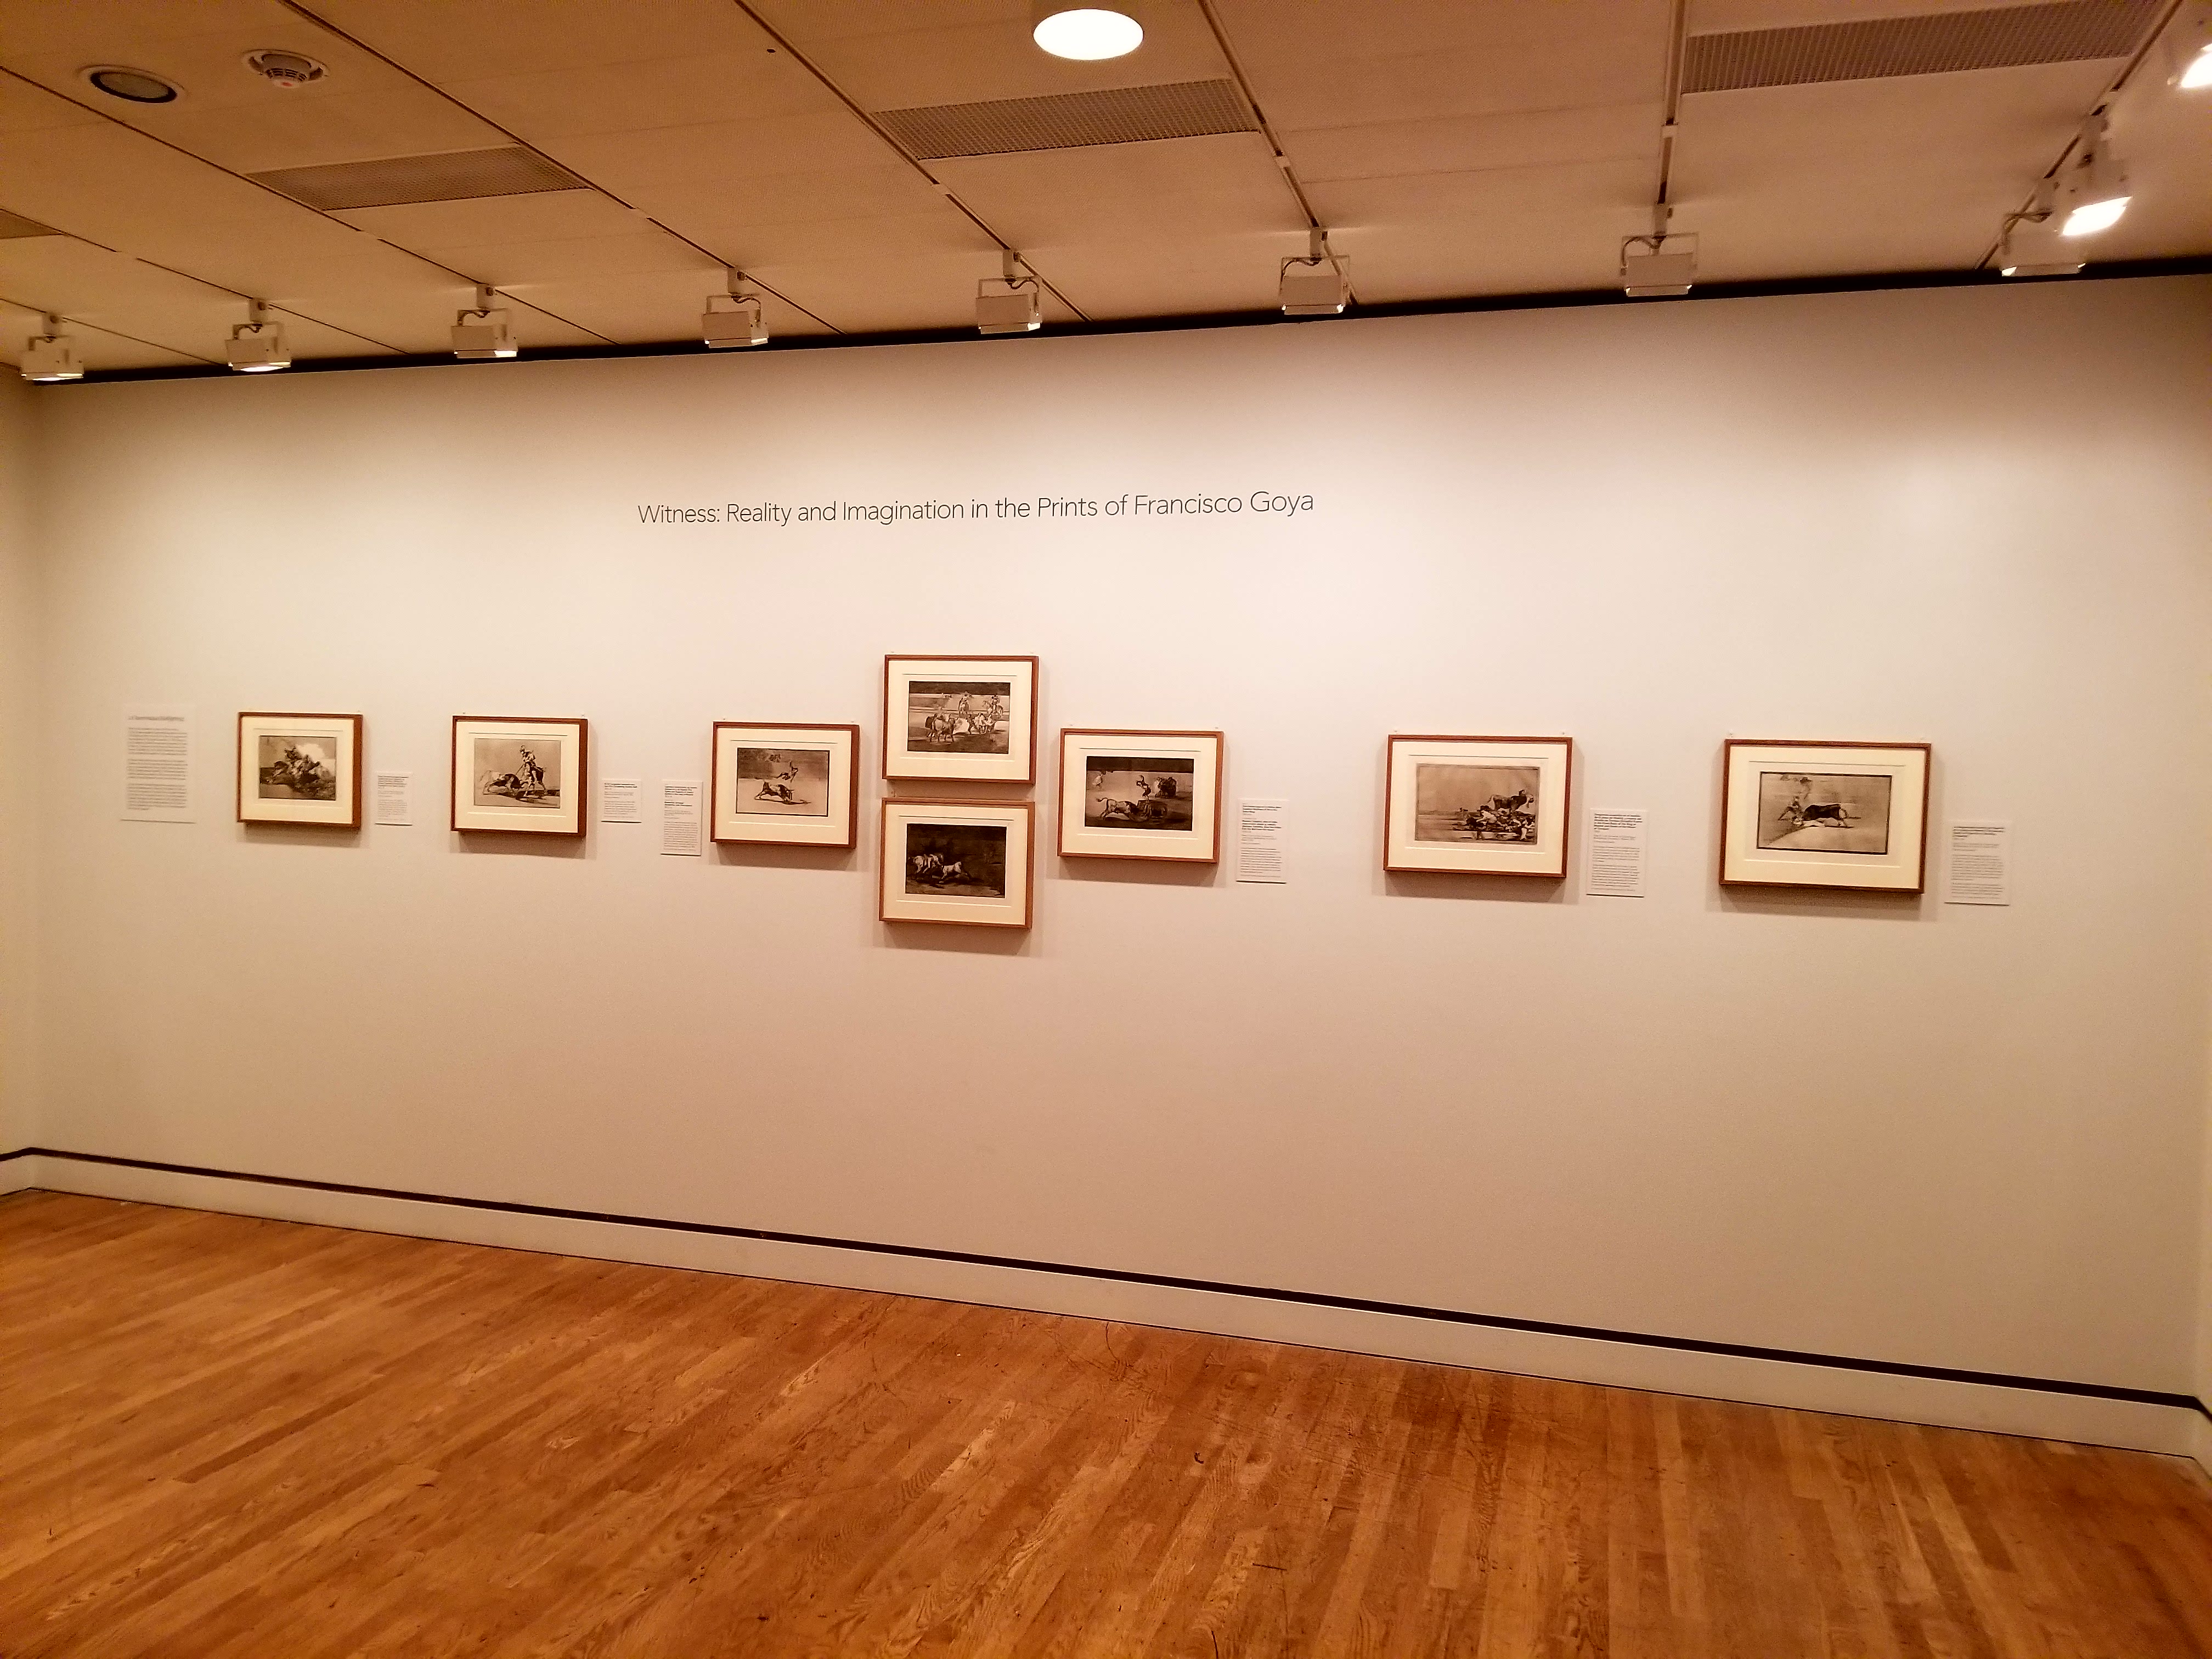 80 de sus 300 grabados están siendo exhibidos en el Museo de Arte de Filadelfia hasta septiembre. Foto: Peter Fitzpatrick/AL DÍA News.